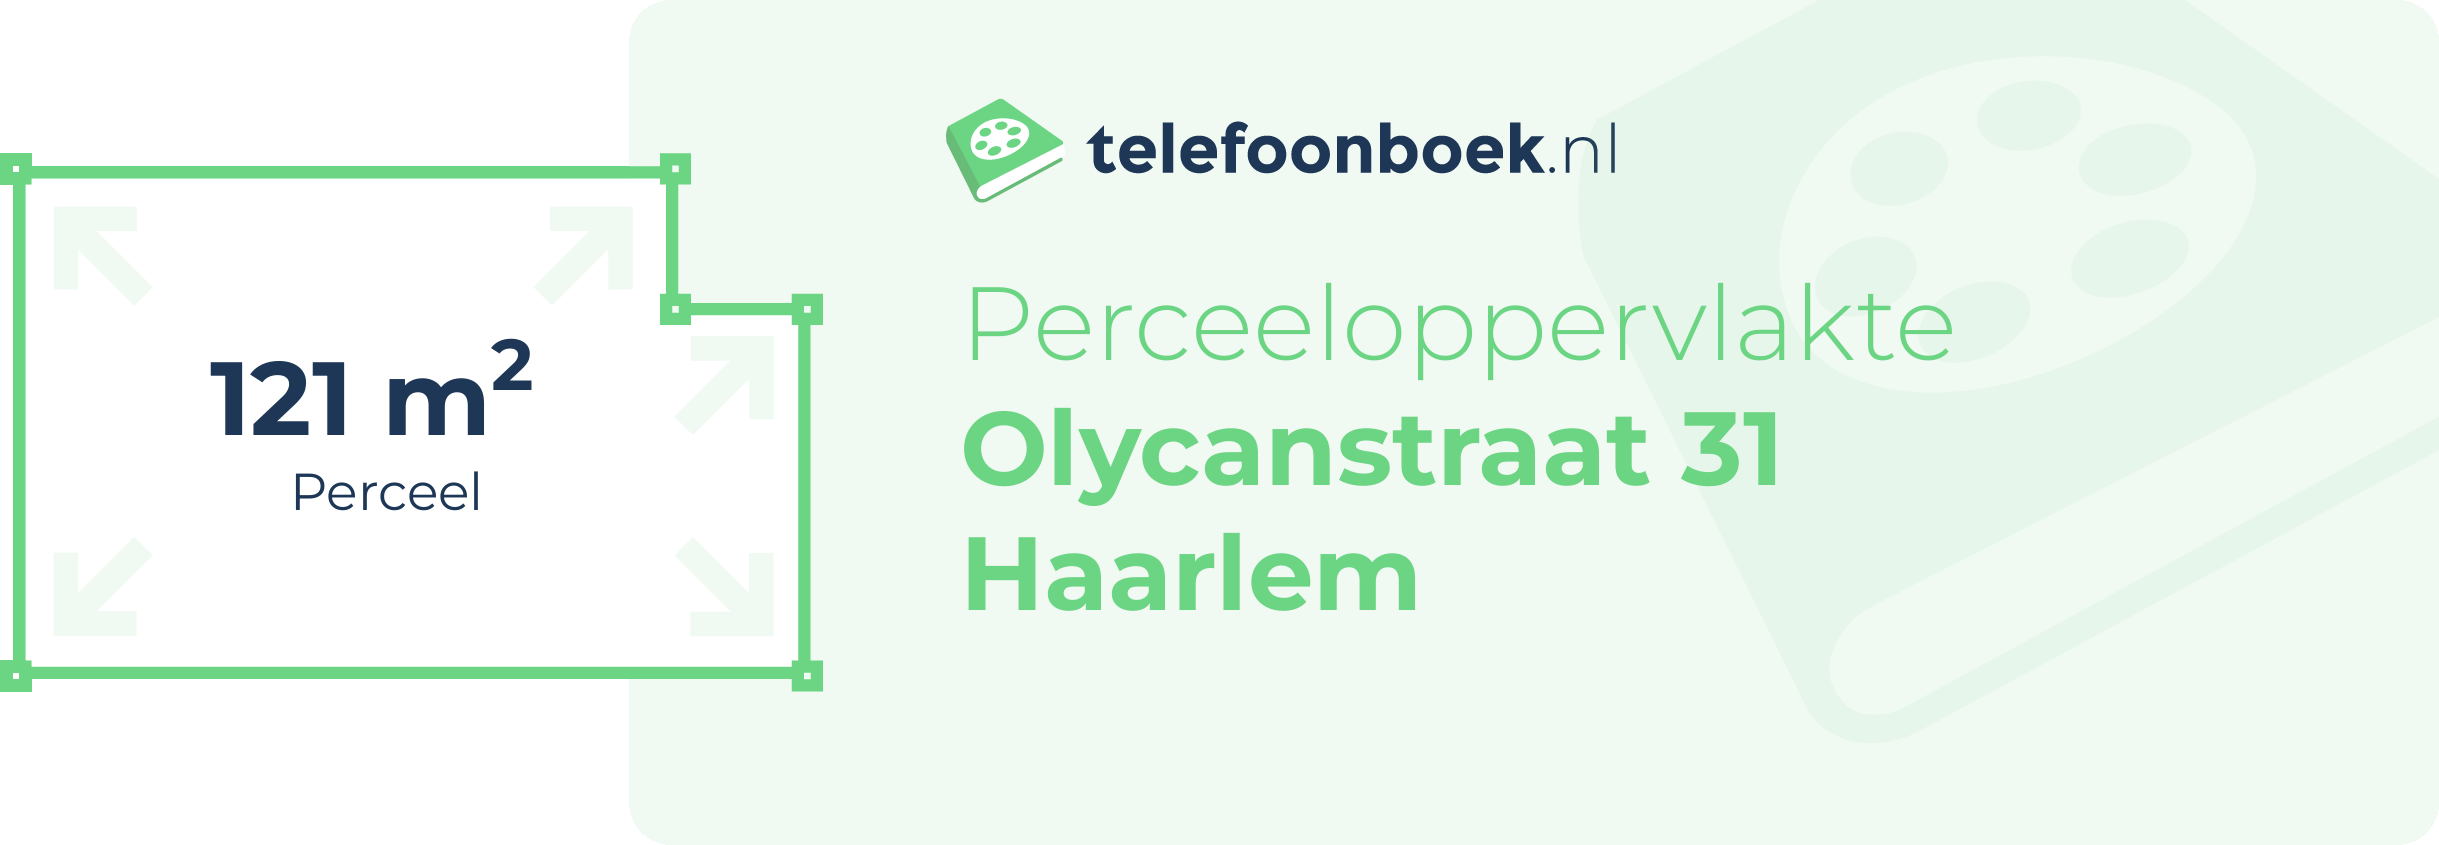 Perceeloppervlakte Olycanstraat 31 Haarlem